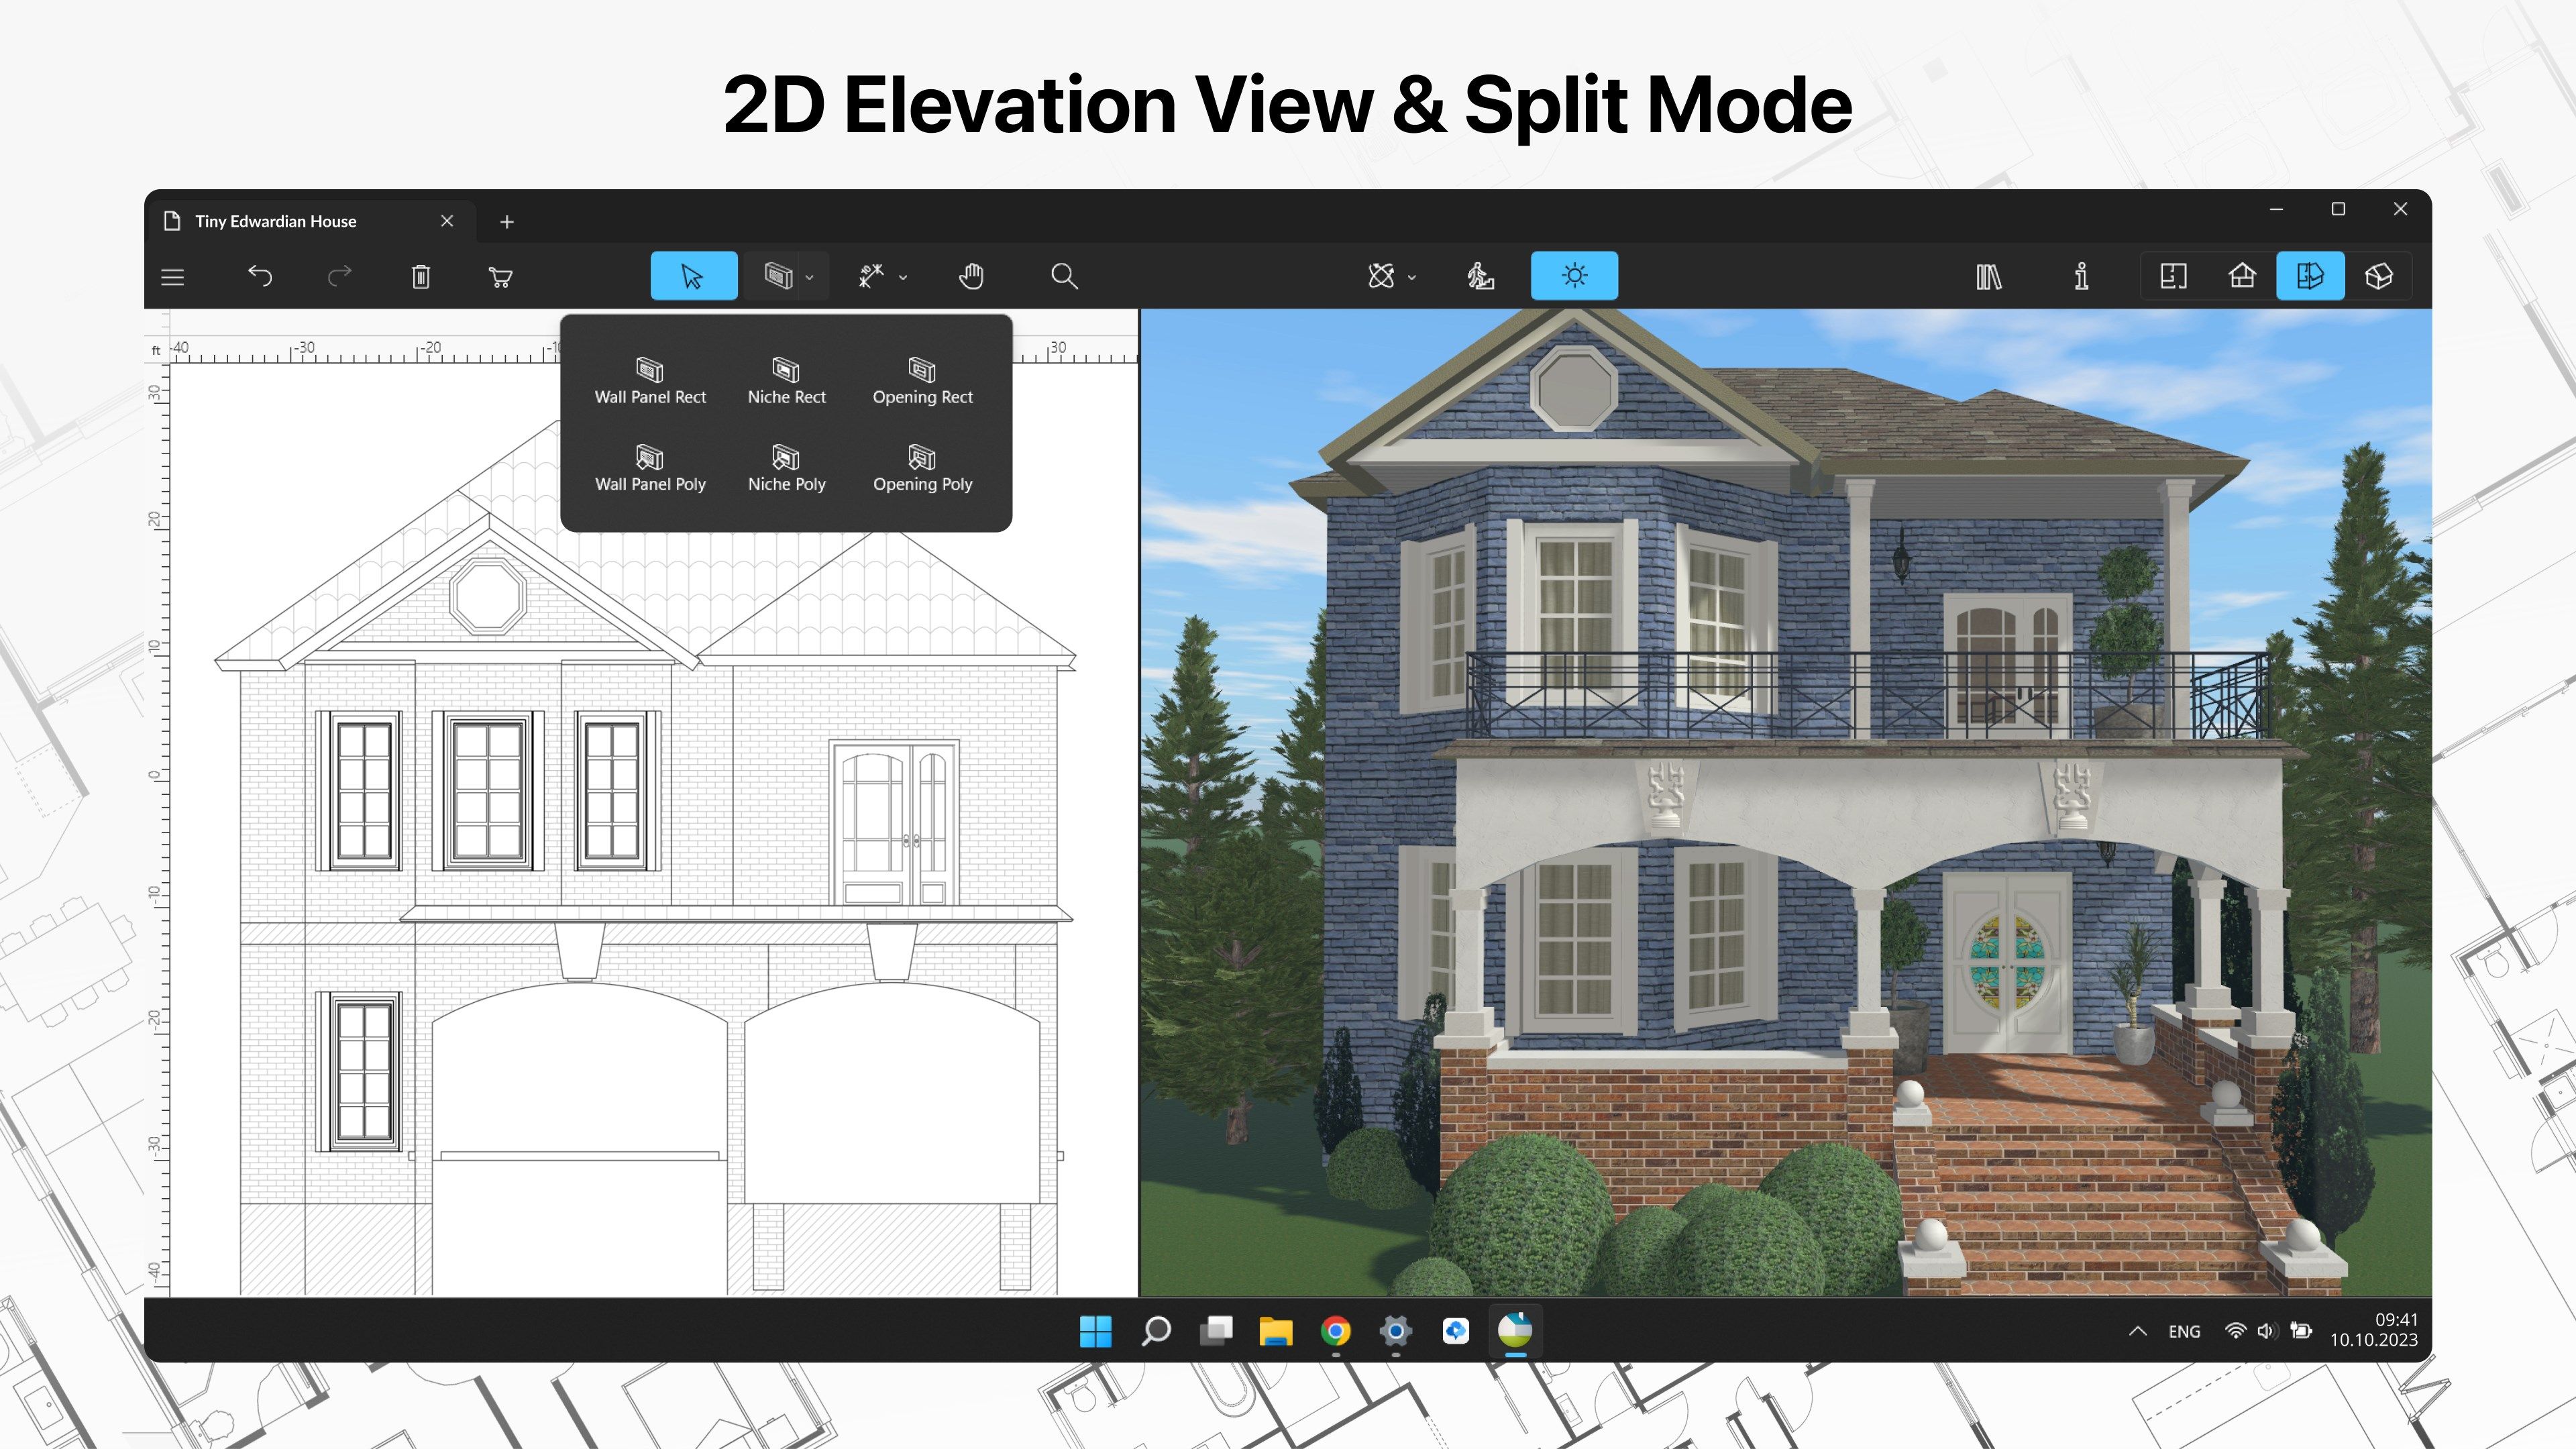 2D Elevation View & Split Mode